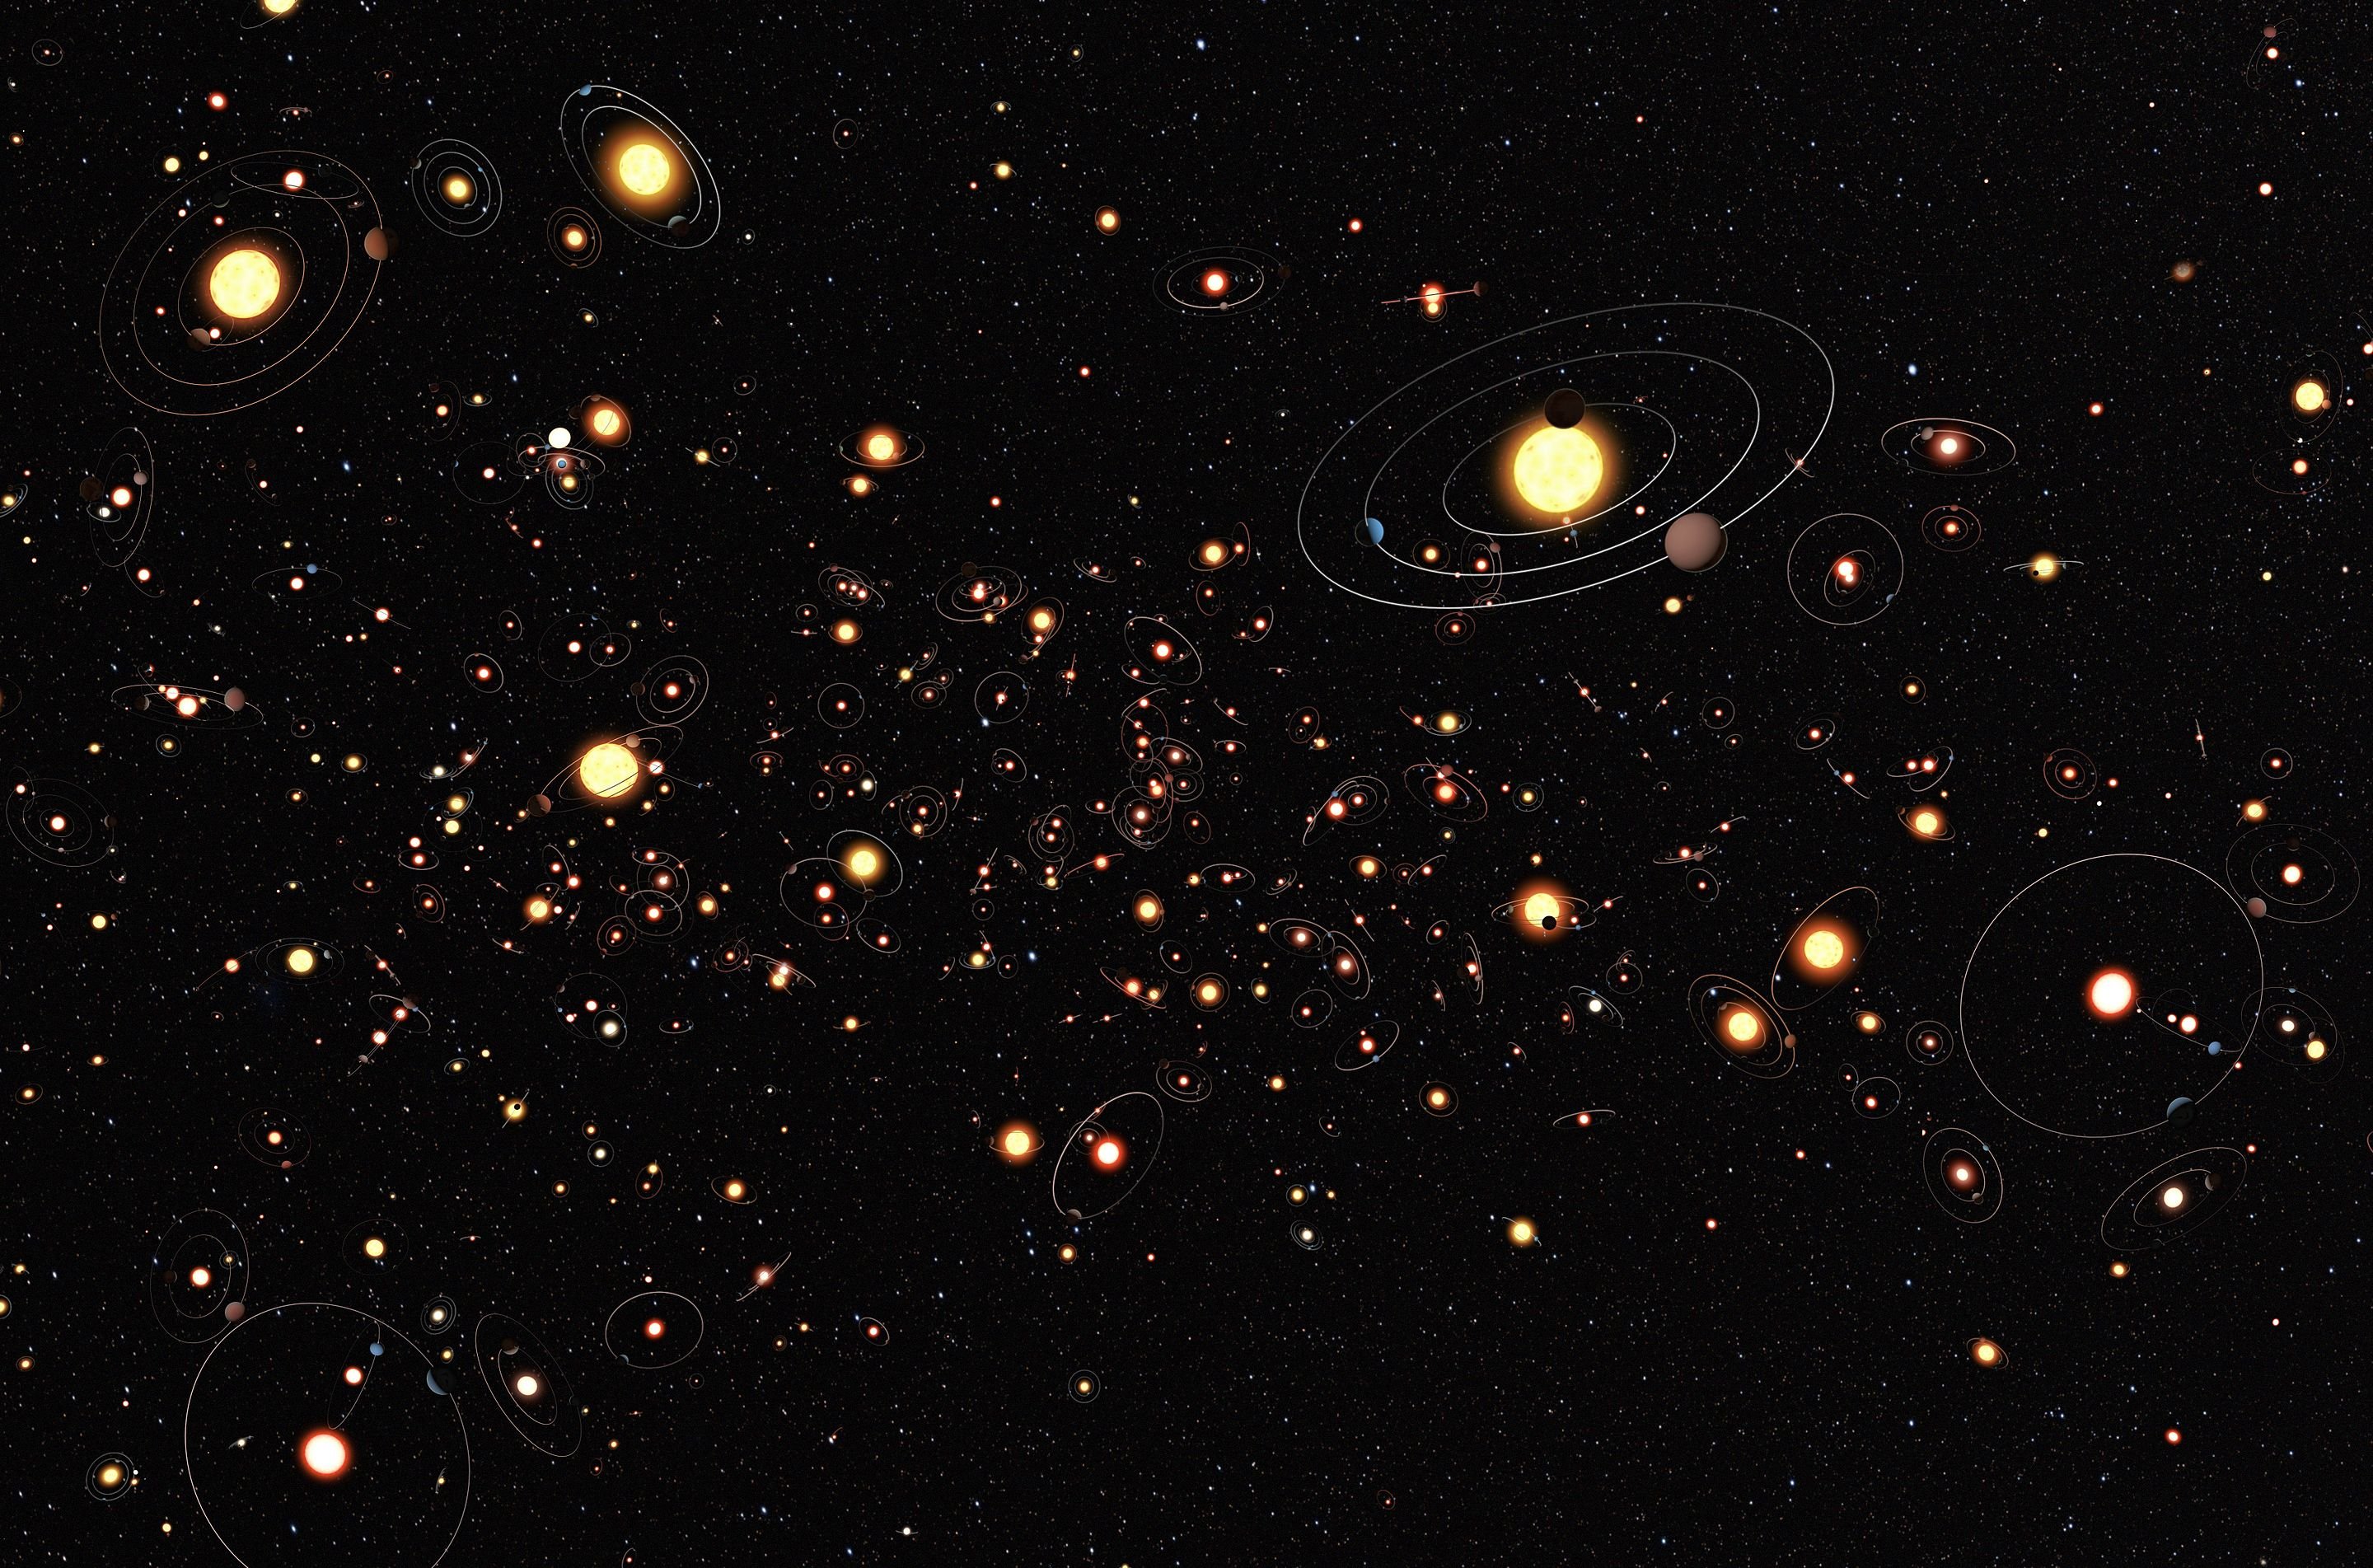 Impressão artística de vários sistemas planetários, com estrelas de diferentes tamanhos e diferentes configurações orbitais.